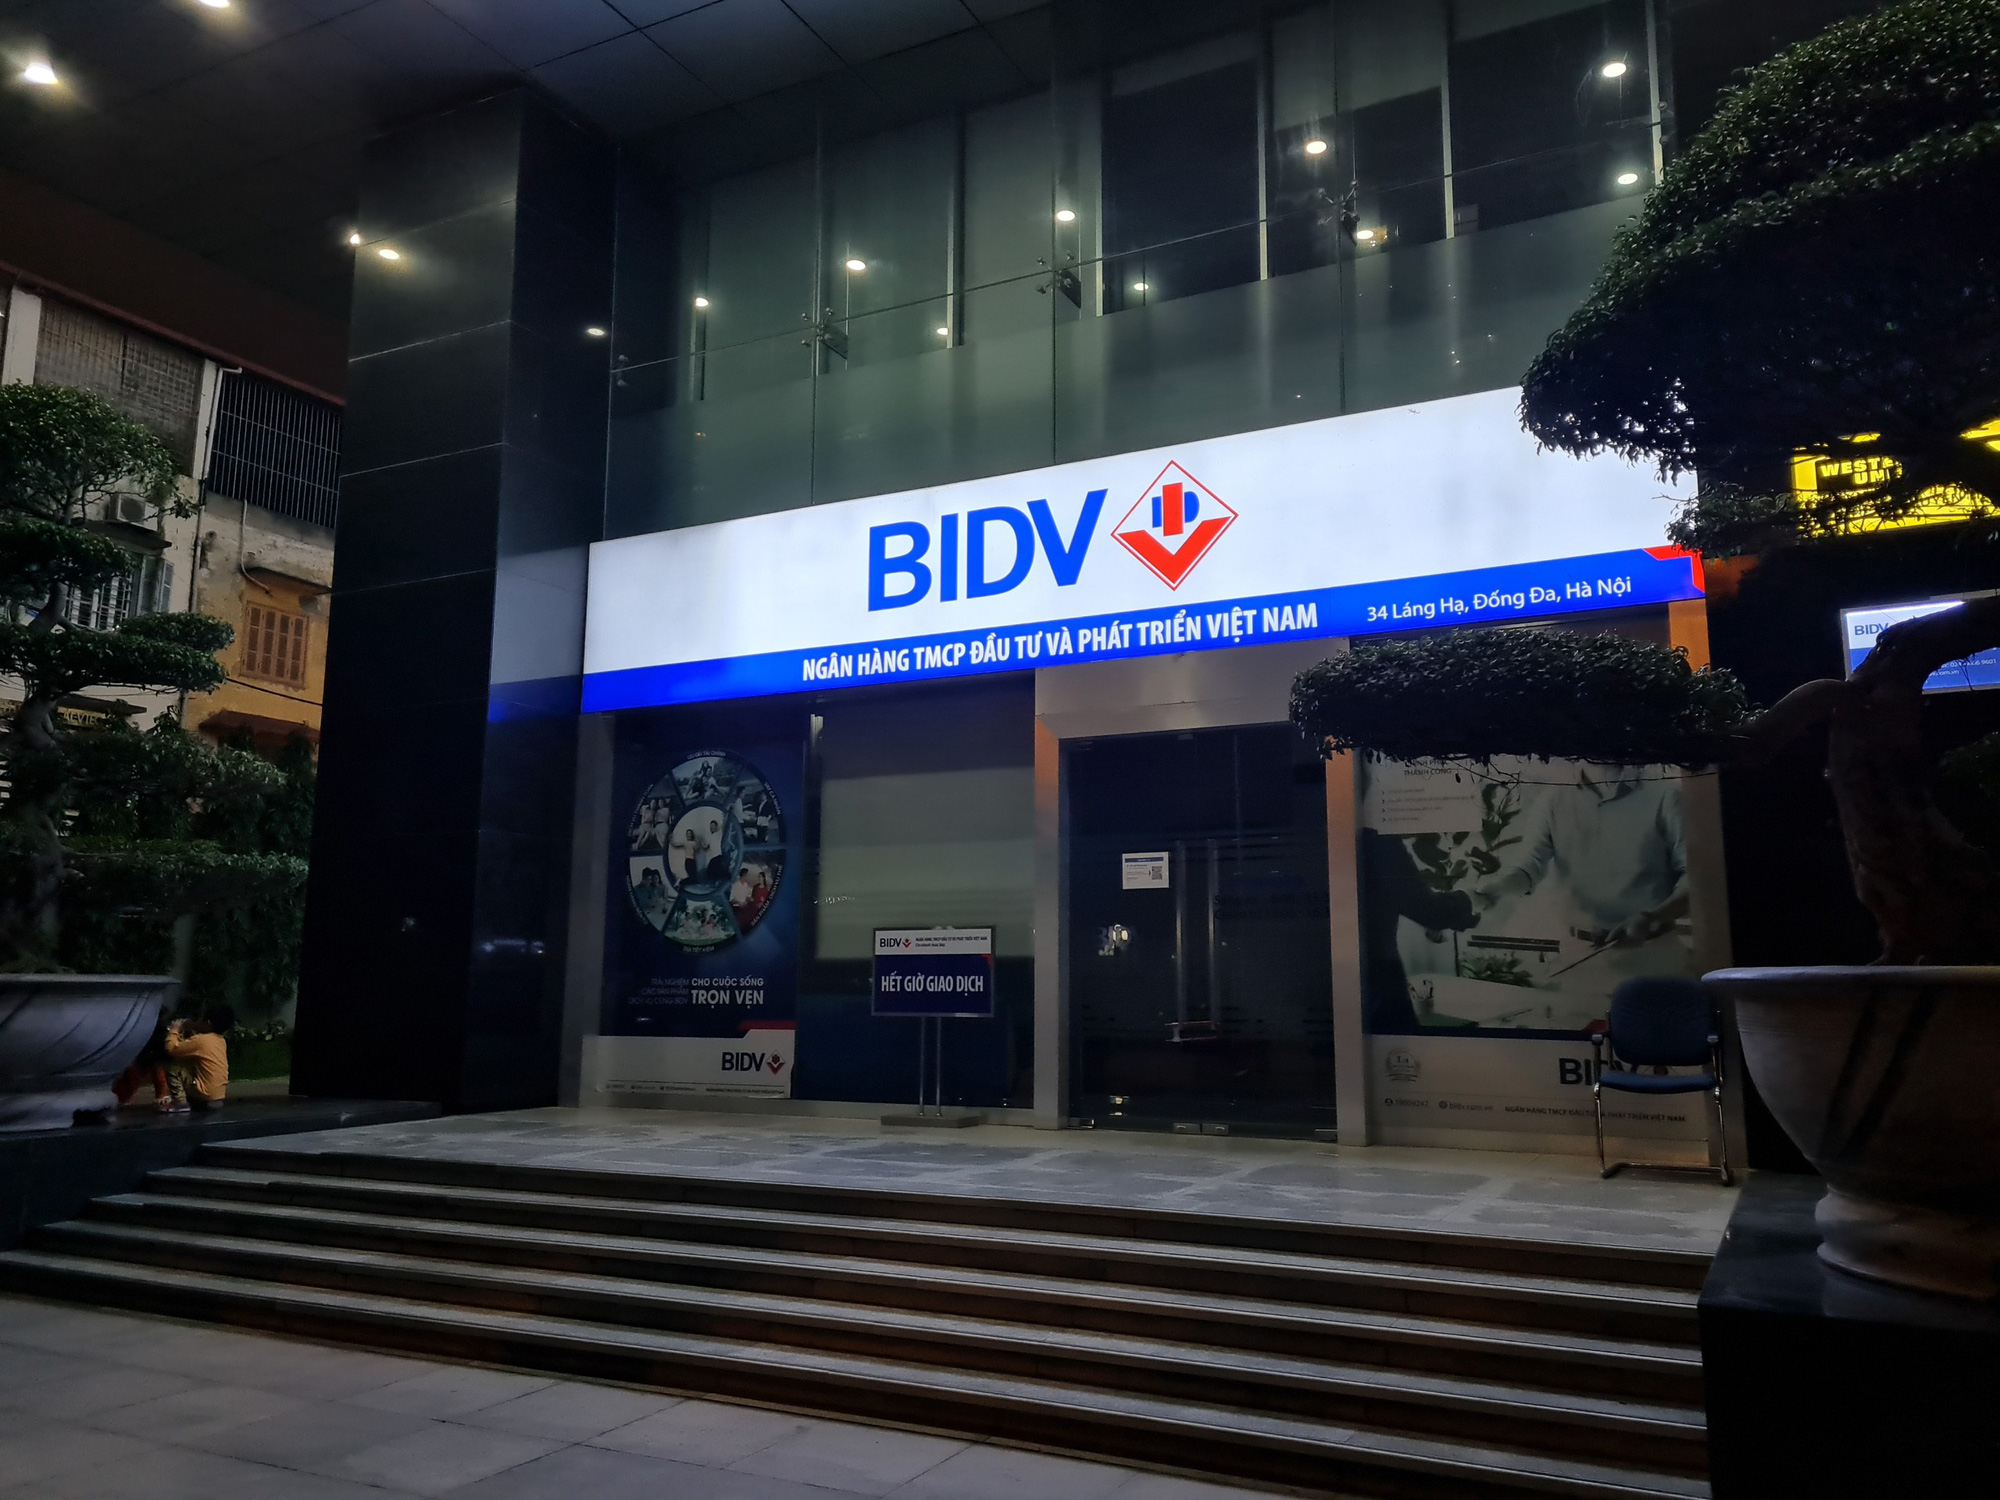 BIDV rao bán khoản nợ gần 900 tỷ đồng của các doanh nghiệp xuất nhập khẩu - Ảnh 1.